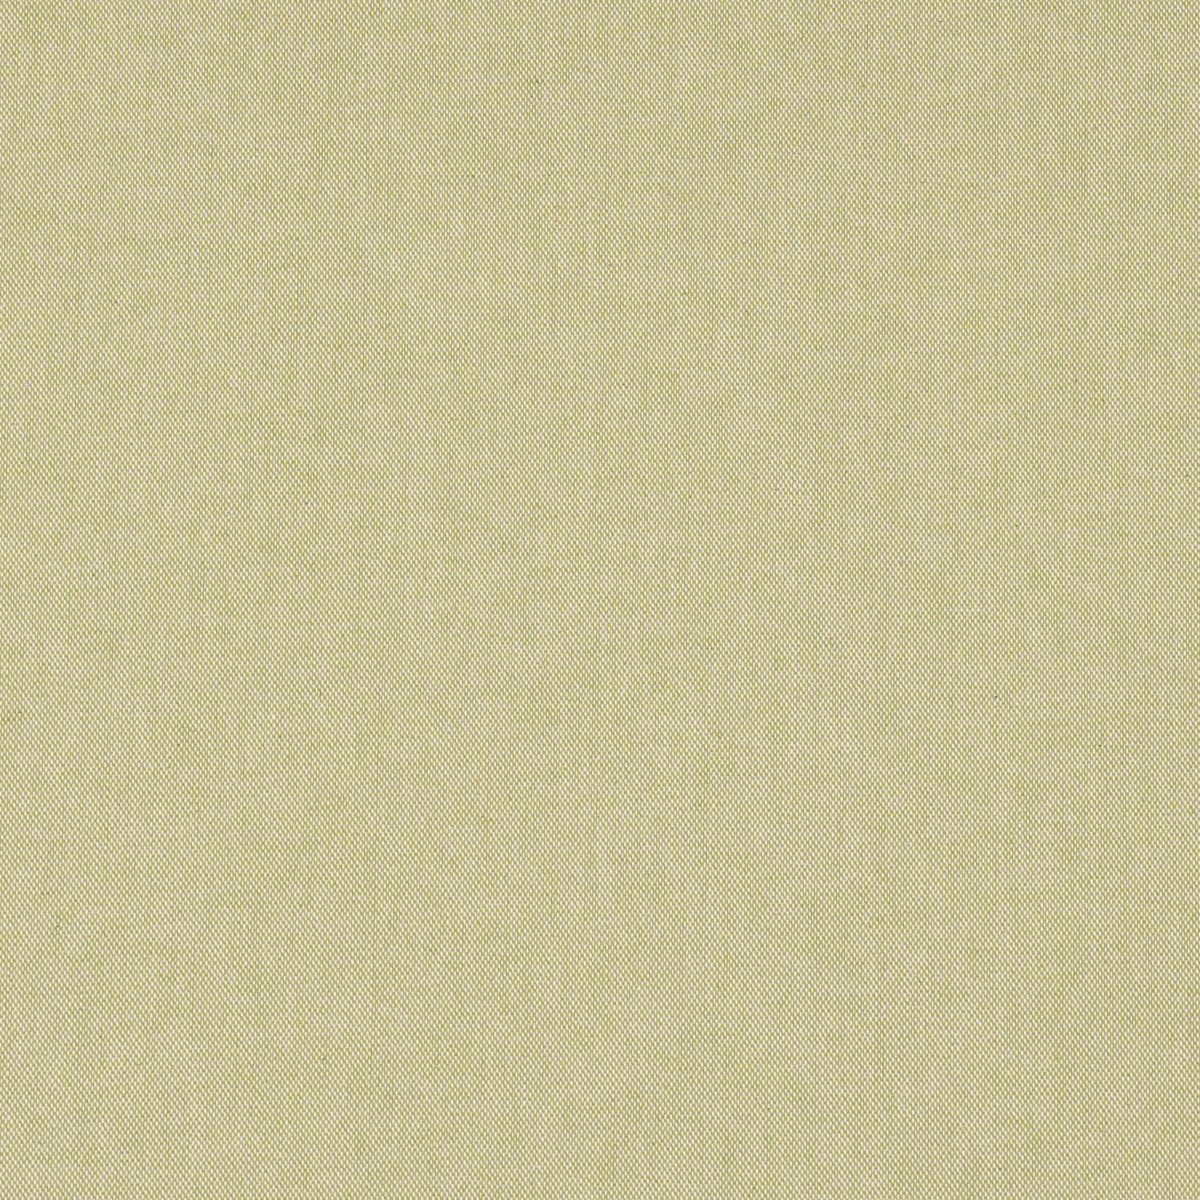 Tischläufer Tischläufer lindgrün Leinenlook uni handmade LEBEN. LEBEN. 40x160cm, SCHÖNER SCHÖNER